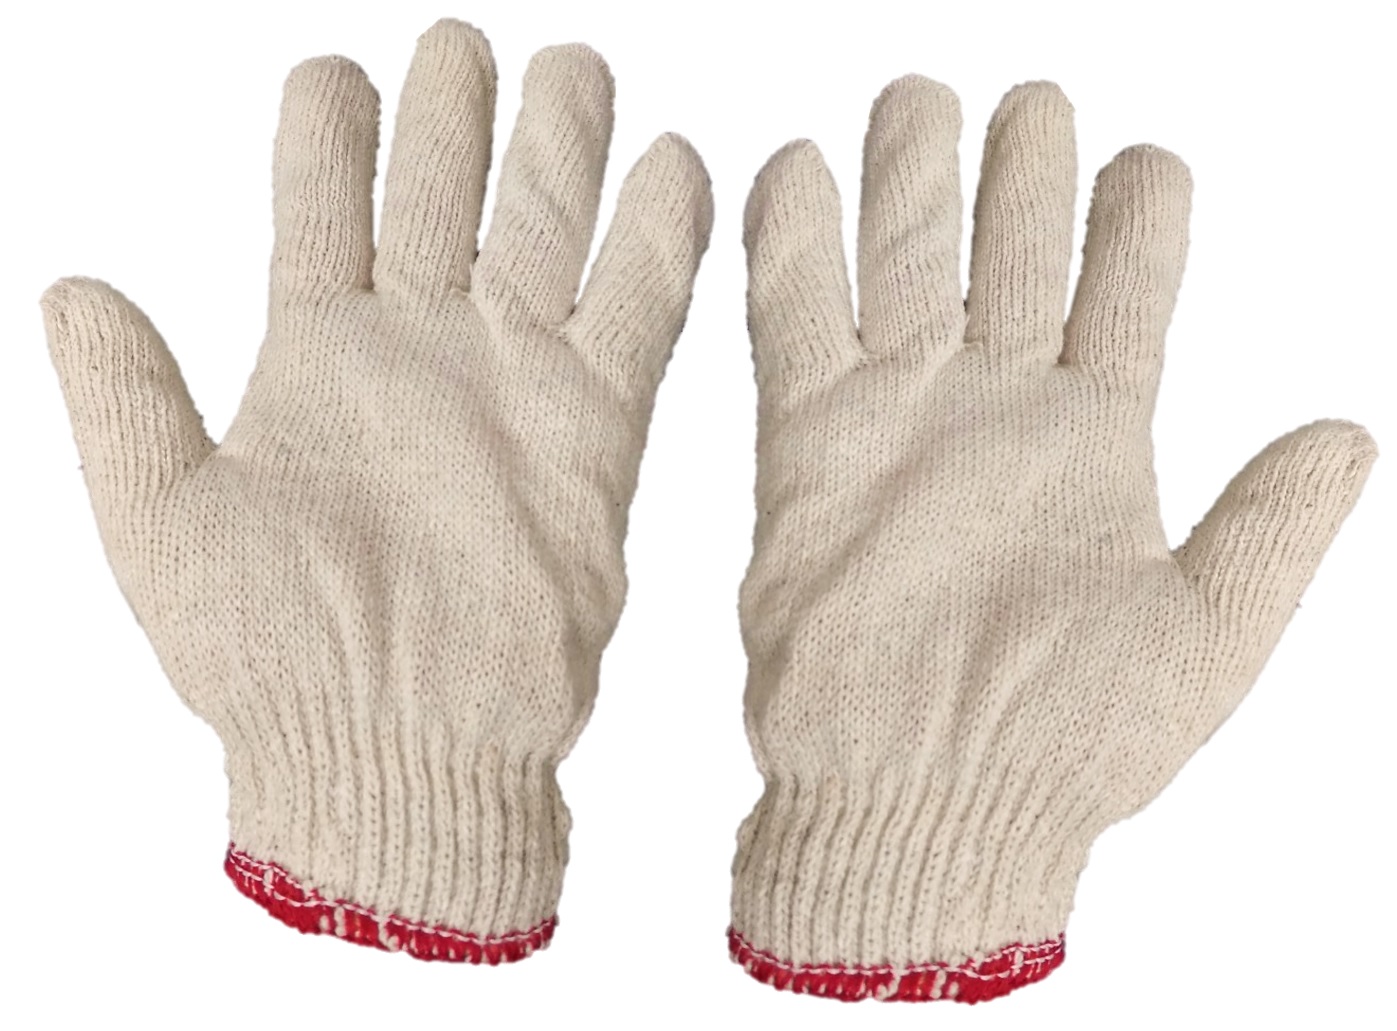 Cotton Work Gloves - Dark Cream Color